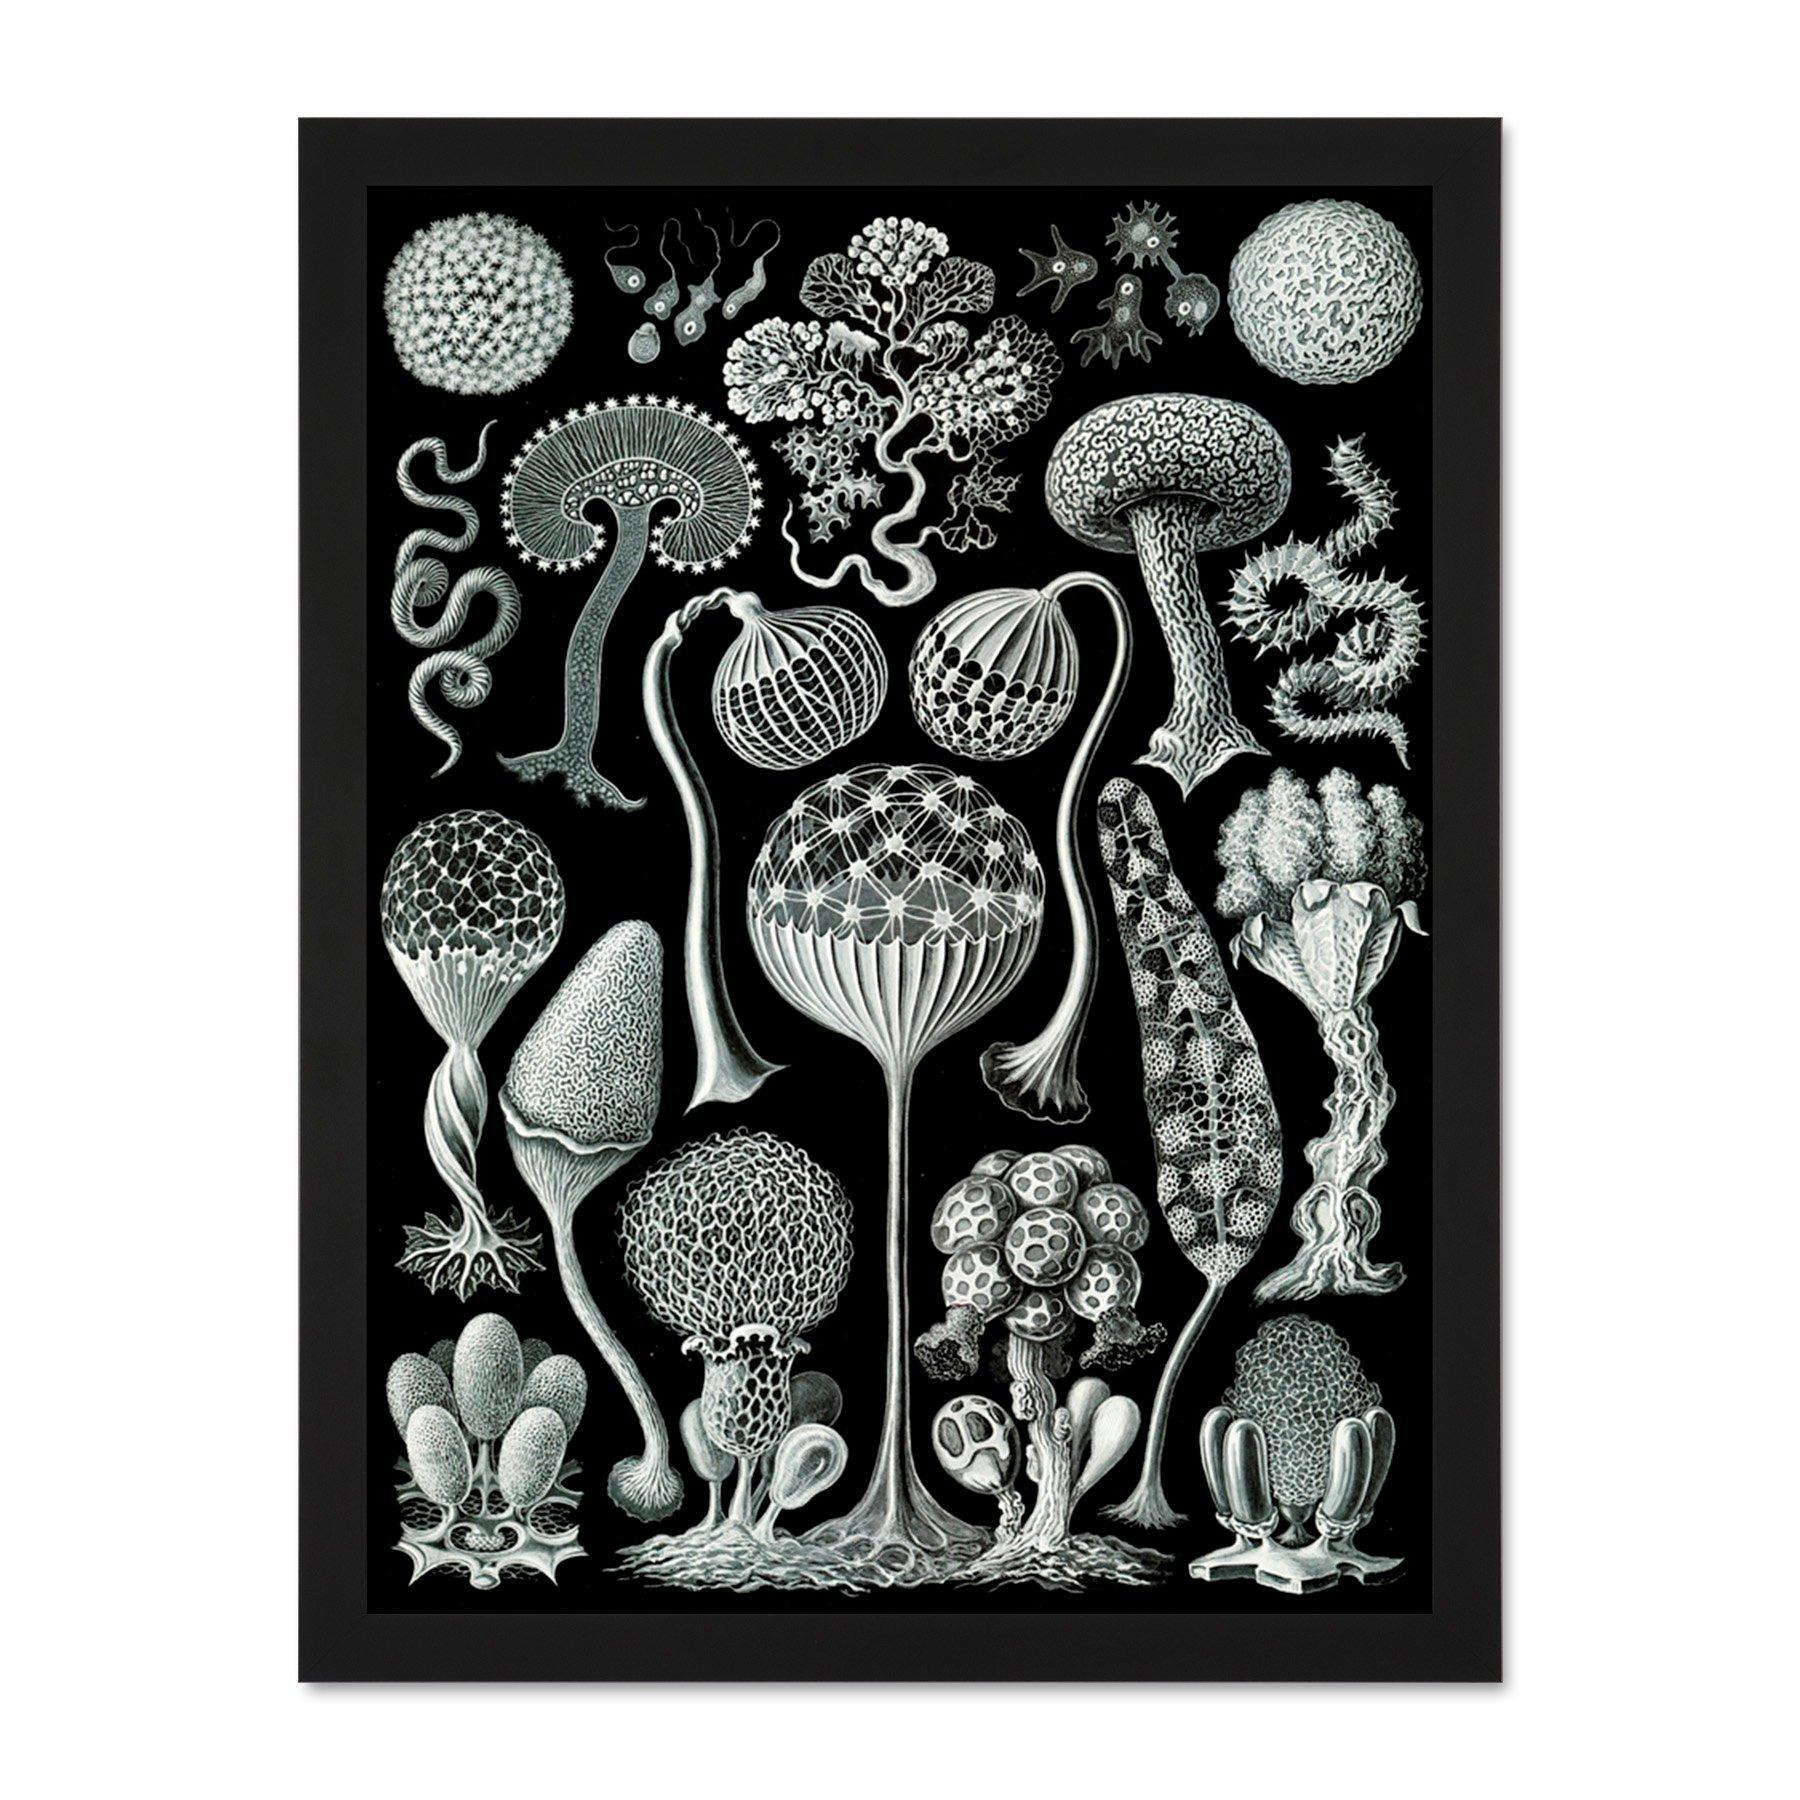 93rd Plate Ernst Haeckel Kunstformen Der Natur Mycetozoa Large Framed Wall Décor Art Print - image 1